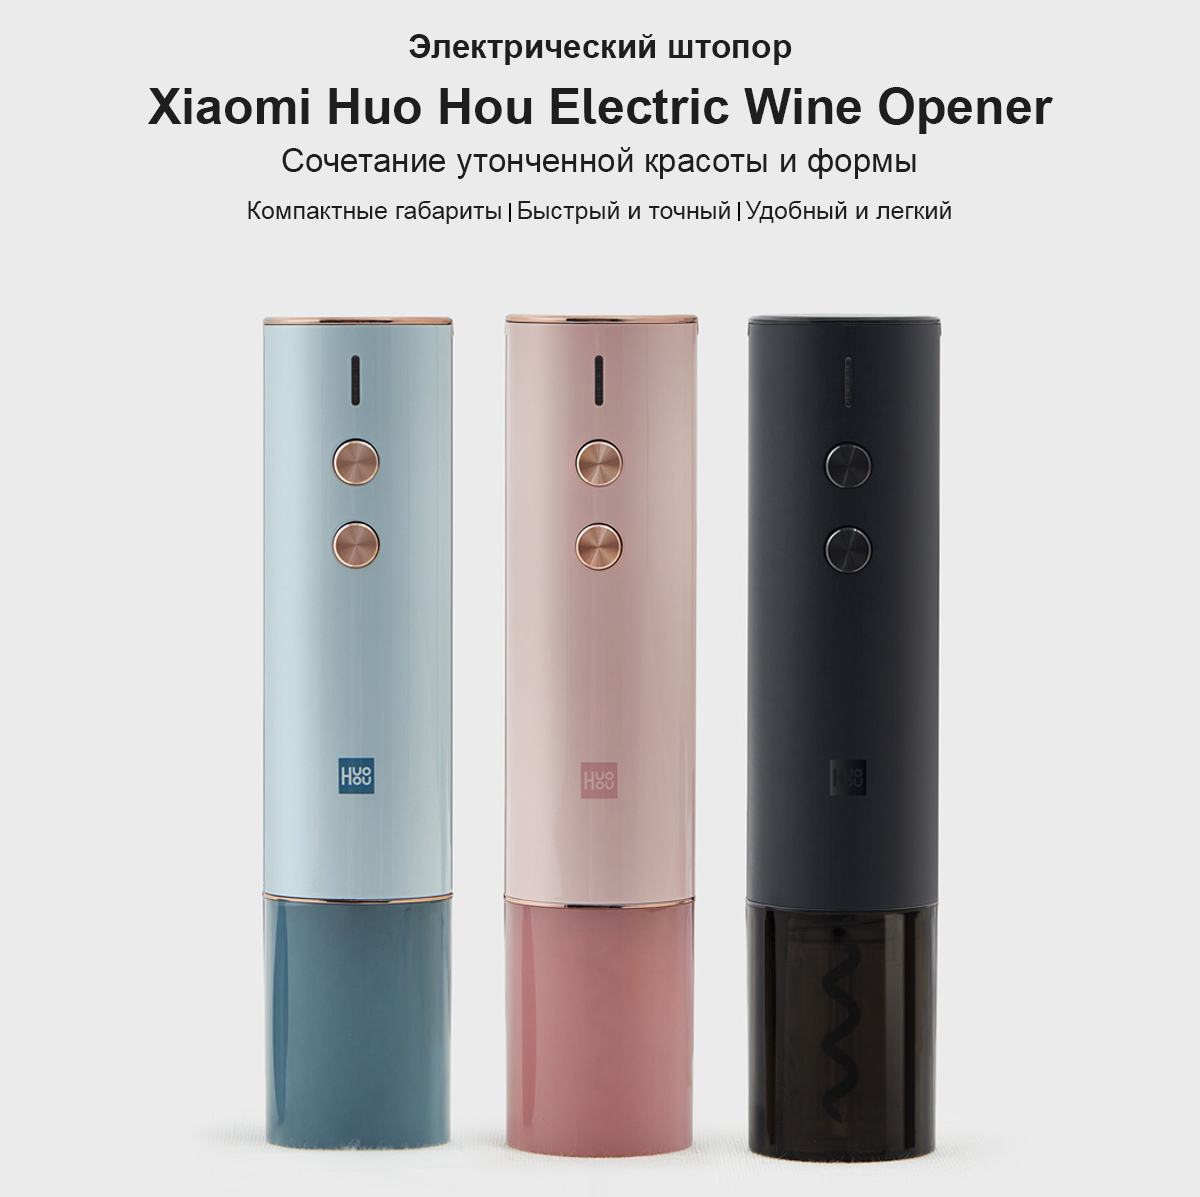 Электрический штопор Xiaomi Huo Hou Electric Wine Opener